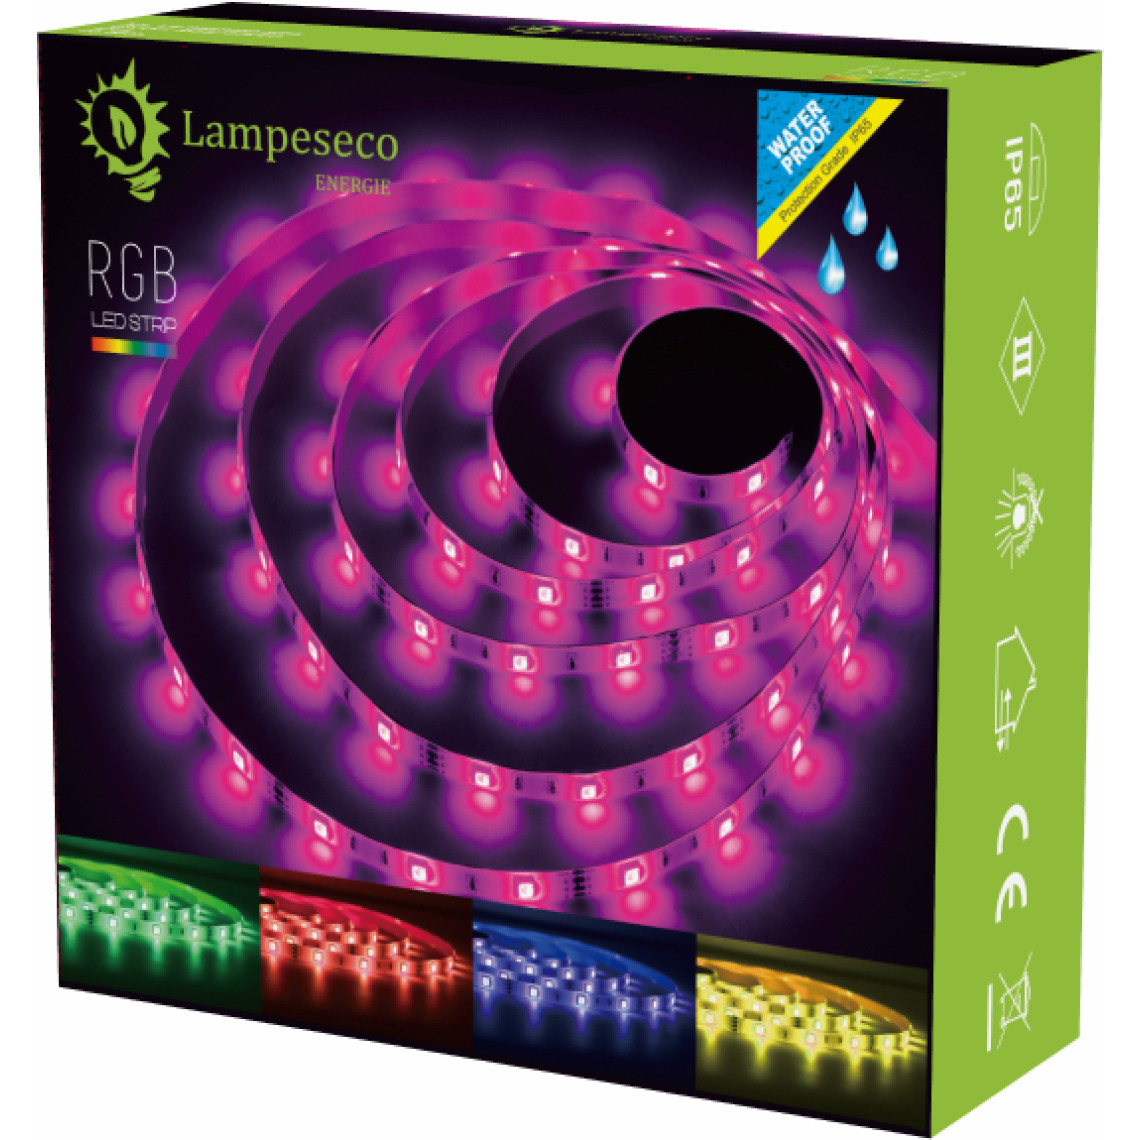 Lampesecoenergie - Bande LED 5m multicouleur RGB pour un éclairage décoratif. - Ruban LED